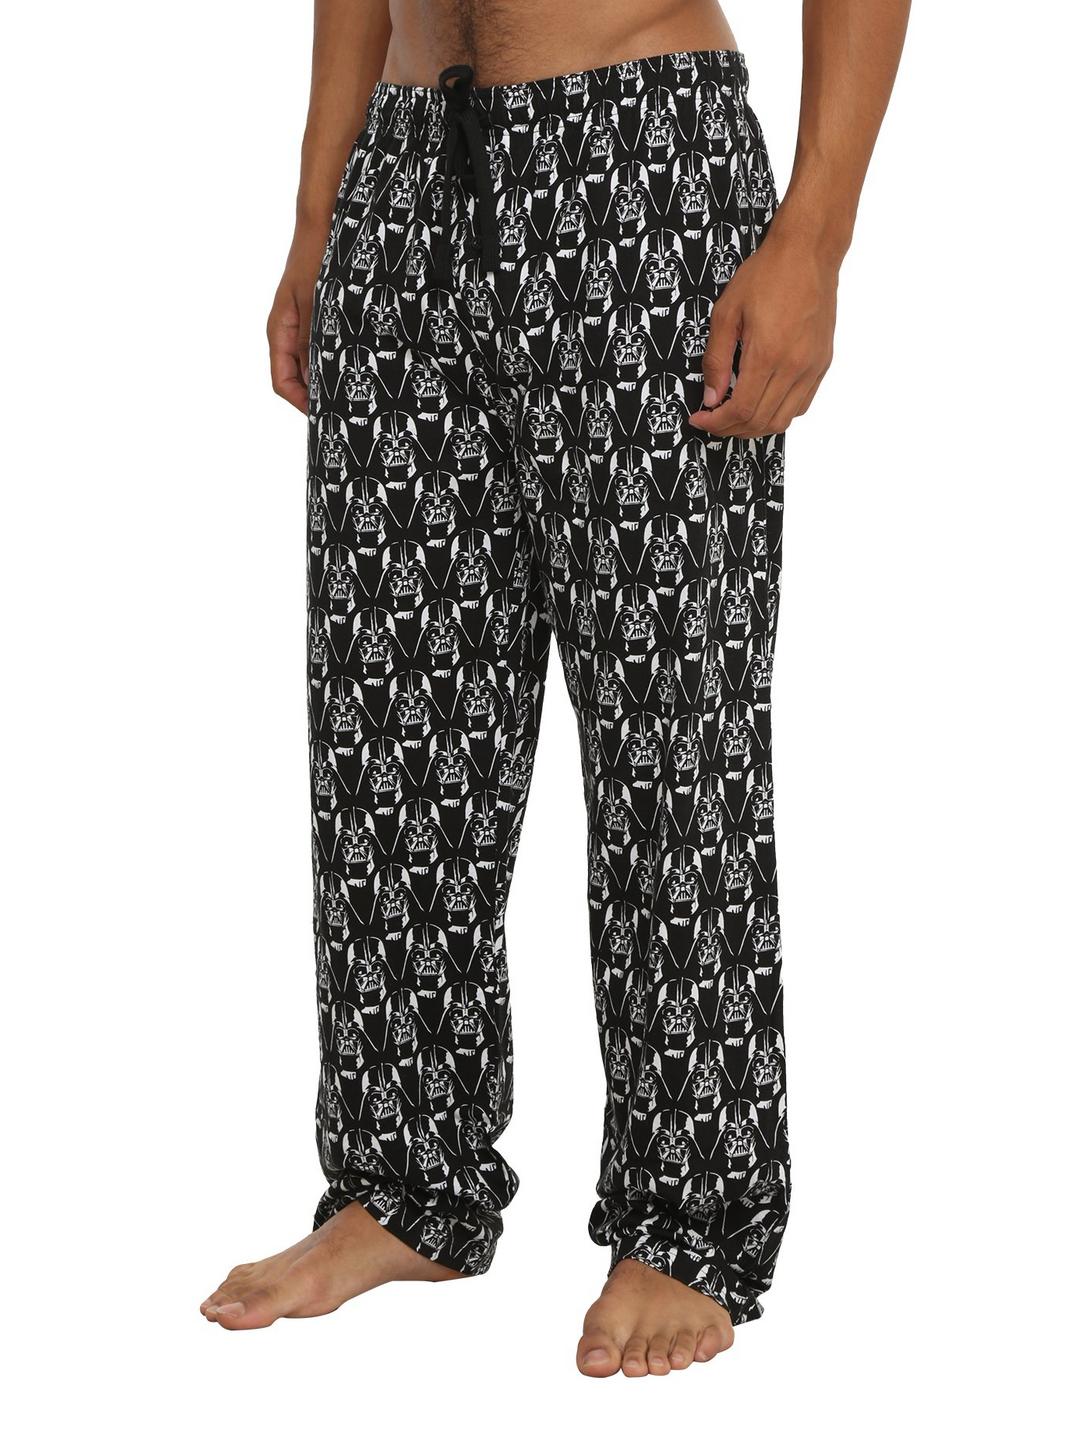 Star Wars Darth Vader Print Guys Pajama Pants | Hot Topic